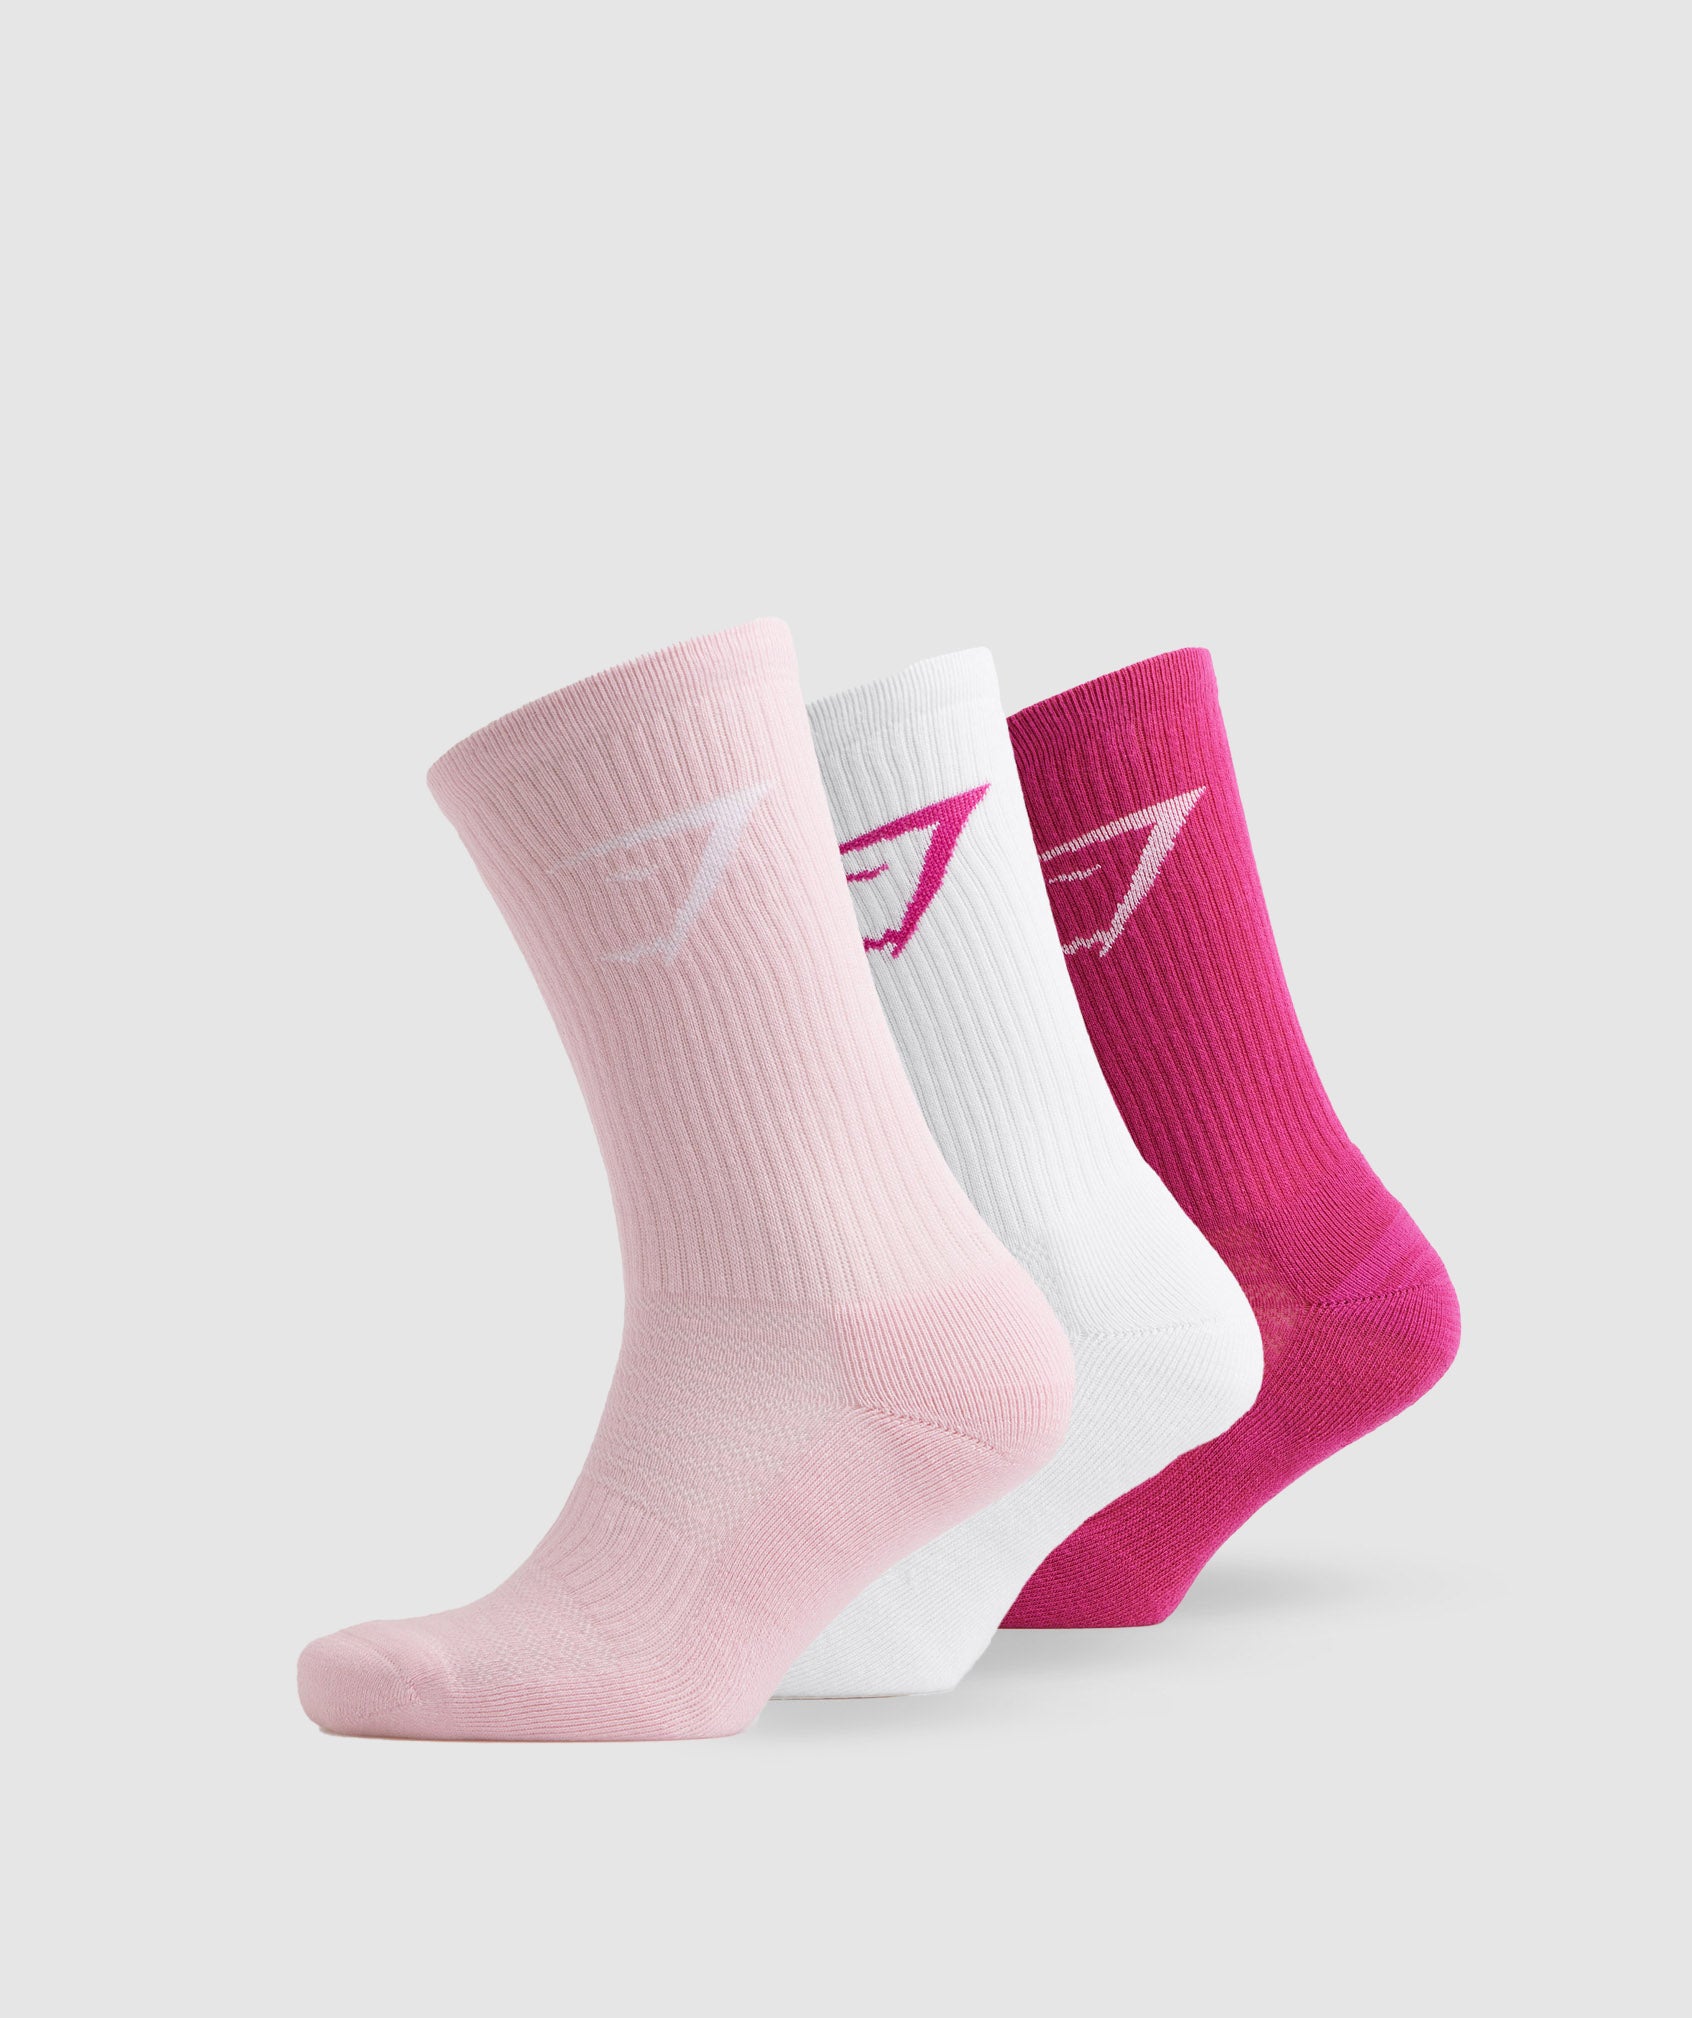 Crew Socks 3pk in Magenta Pink/White/Sweet Pink - view 1